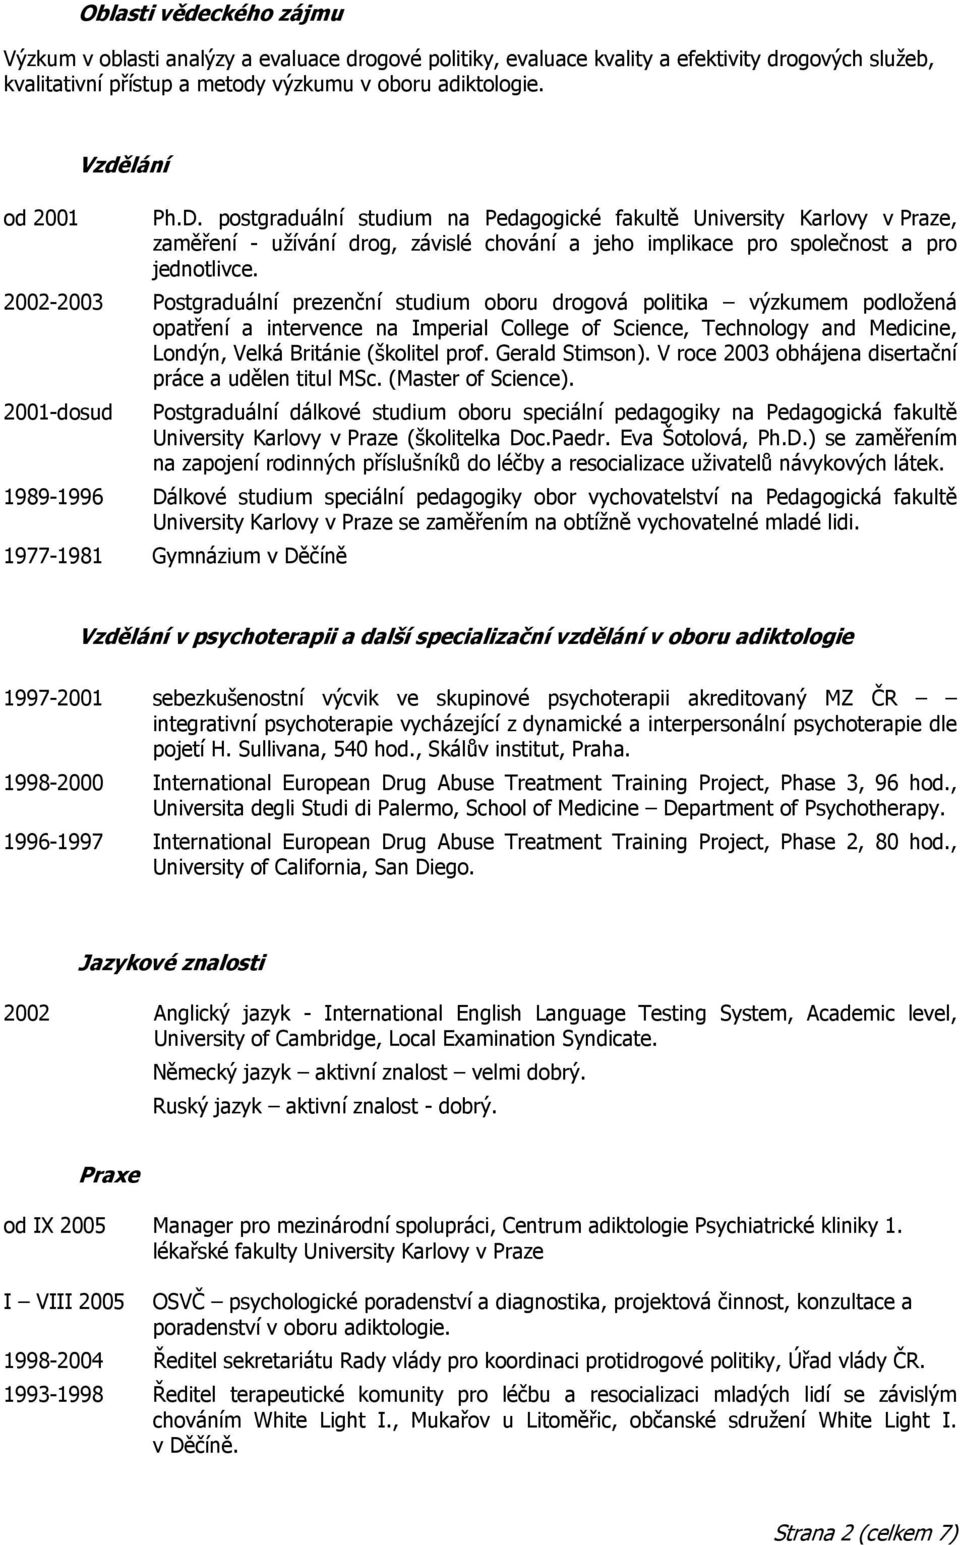 2002-2003 Postgraduální prezenční studium oboru drogová politika výzkumem podložená opatření a intervence na Imperial College of Science, Technology and Medicine, Londýn, Velká Británie (školitel